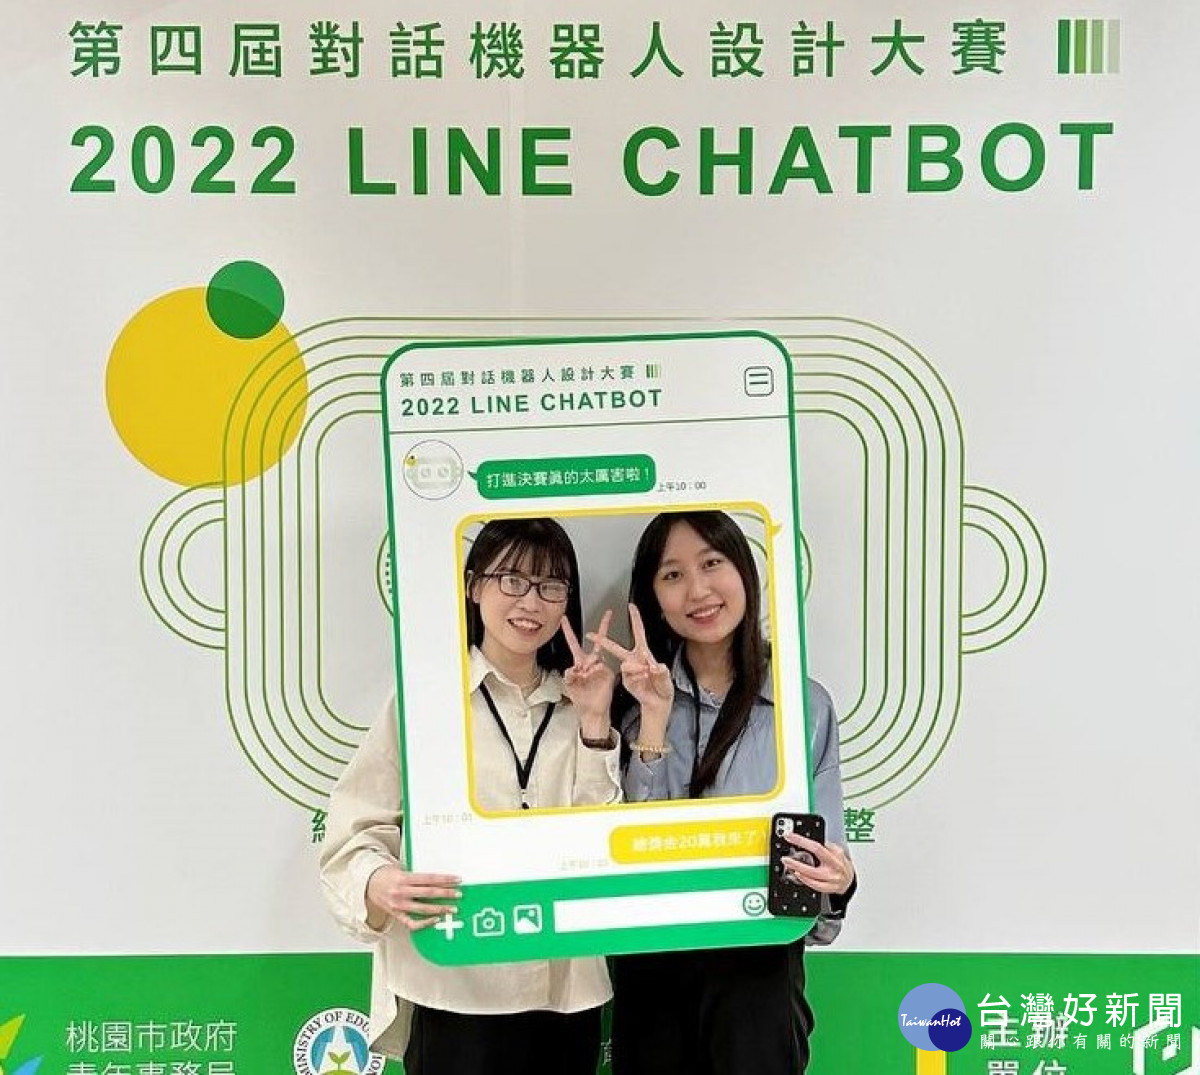 元智大學資工系丁子函、吳珮綸，參加「2022 LINE HATBOT對話機器人設計大賽」，榮獲季軍殊榮